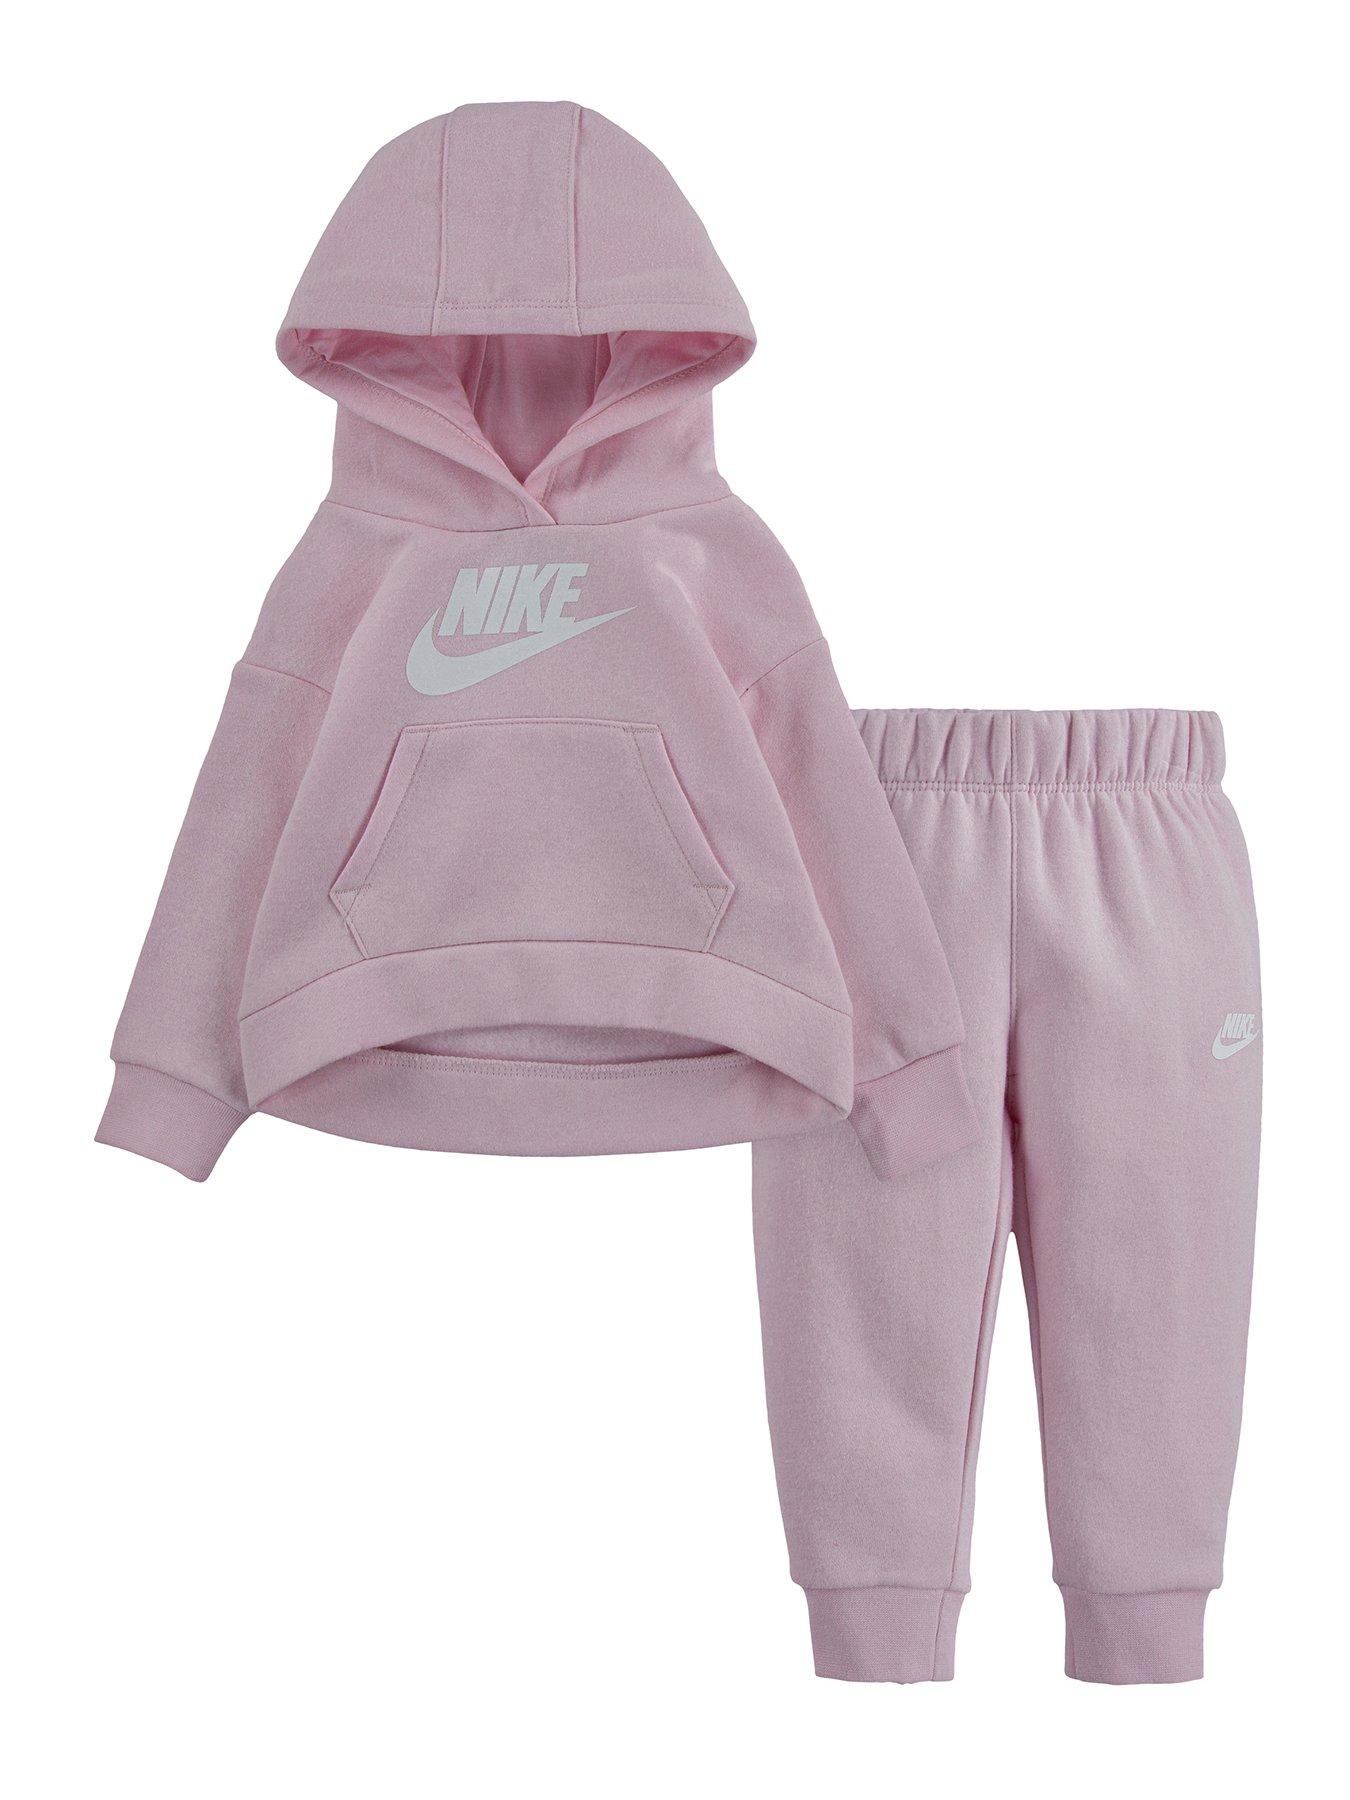 Nike Sportswear Club Fleece Older Kids' (Girls') 1/2-Zip Top. Nike LU